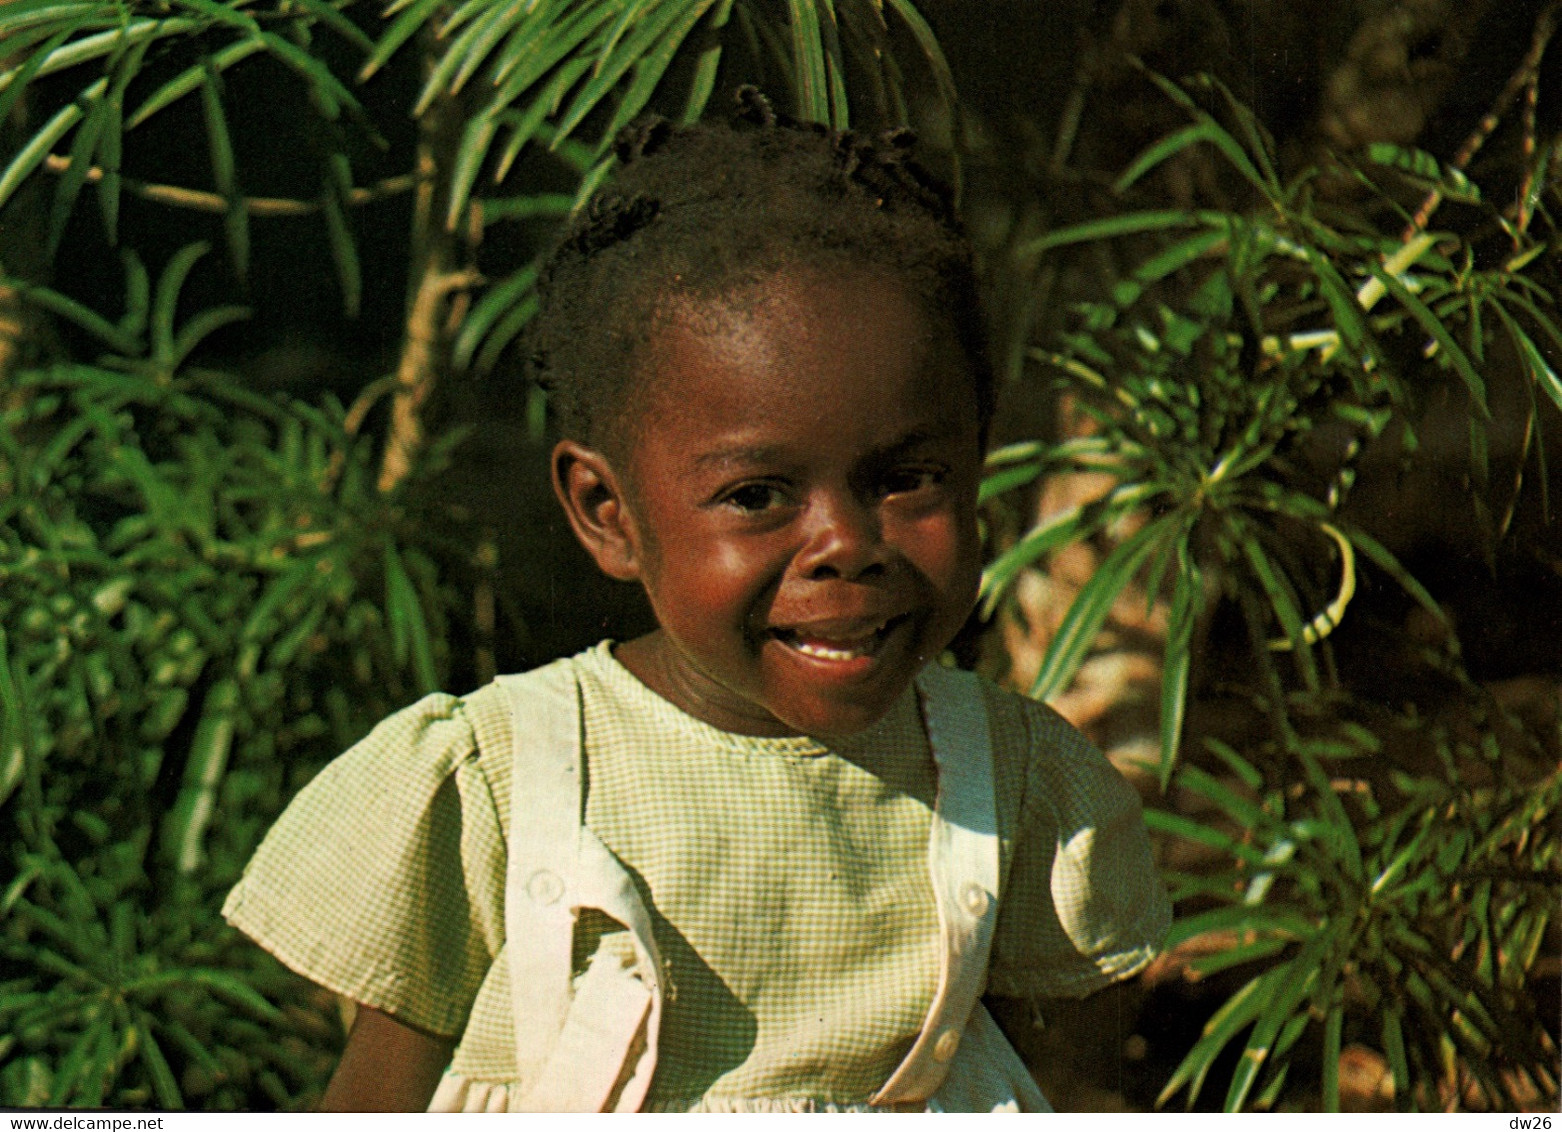 Afrique - Guinea Ecuatorial (Guinée Equatoriale) Sonrisa De Nina En Bata (sourire D'enfant) - Africa